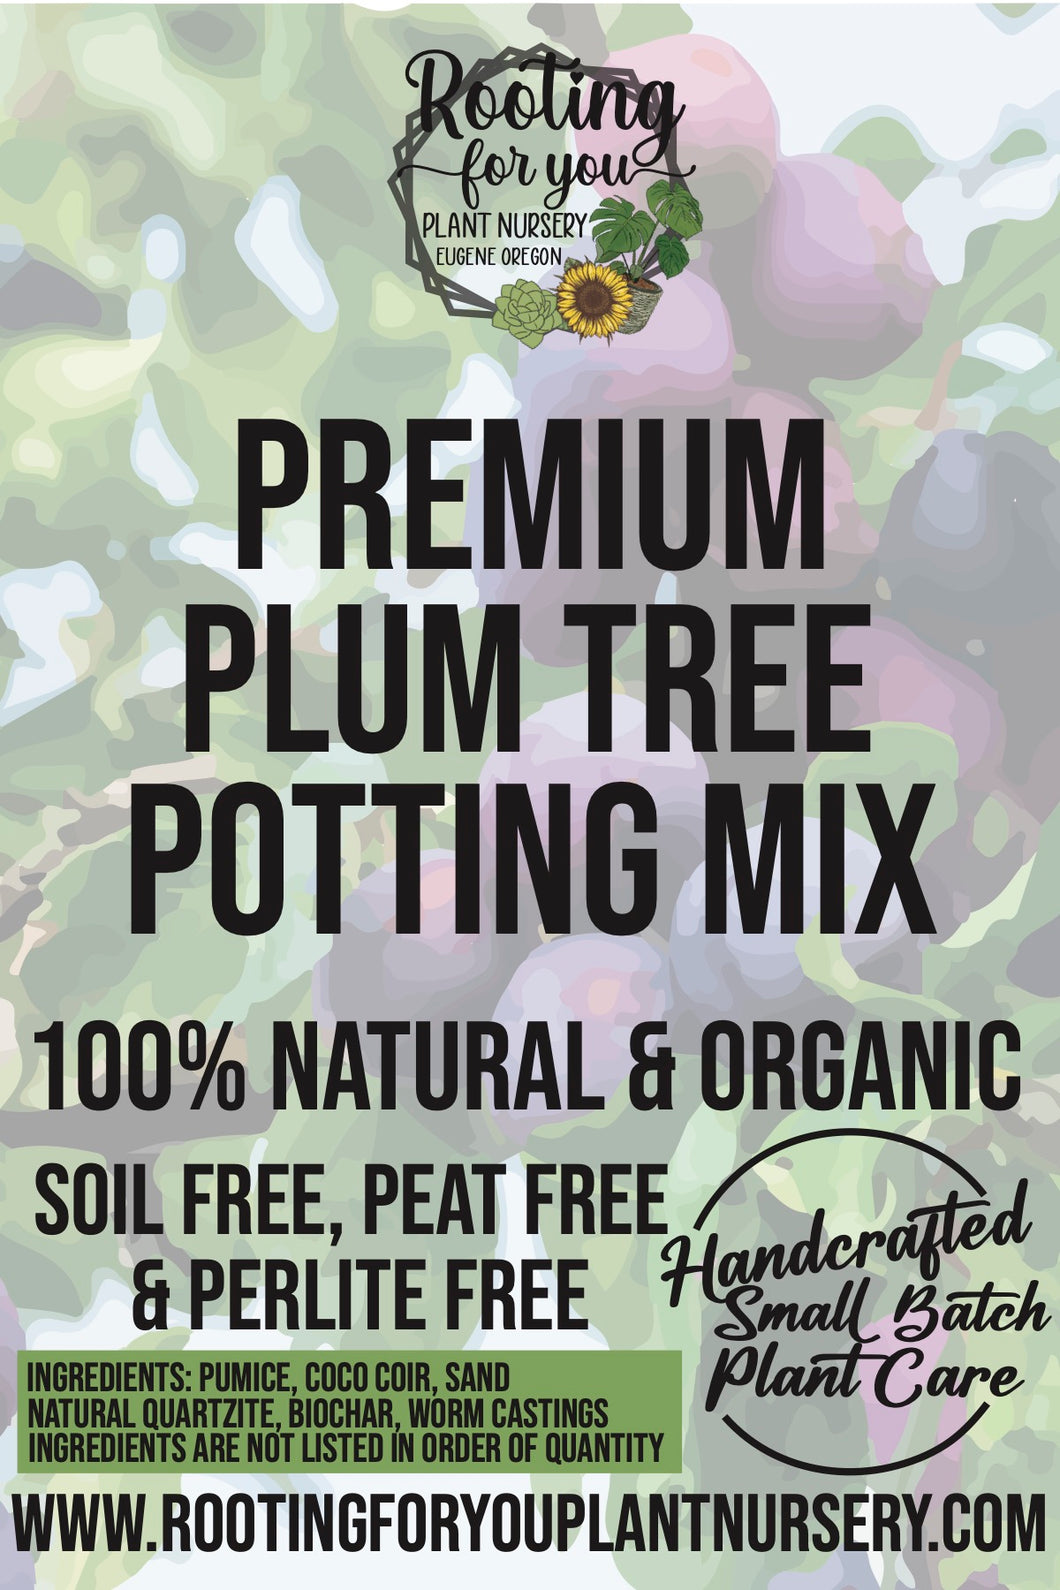 Plum Tree Premium Potting Mix